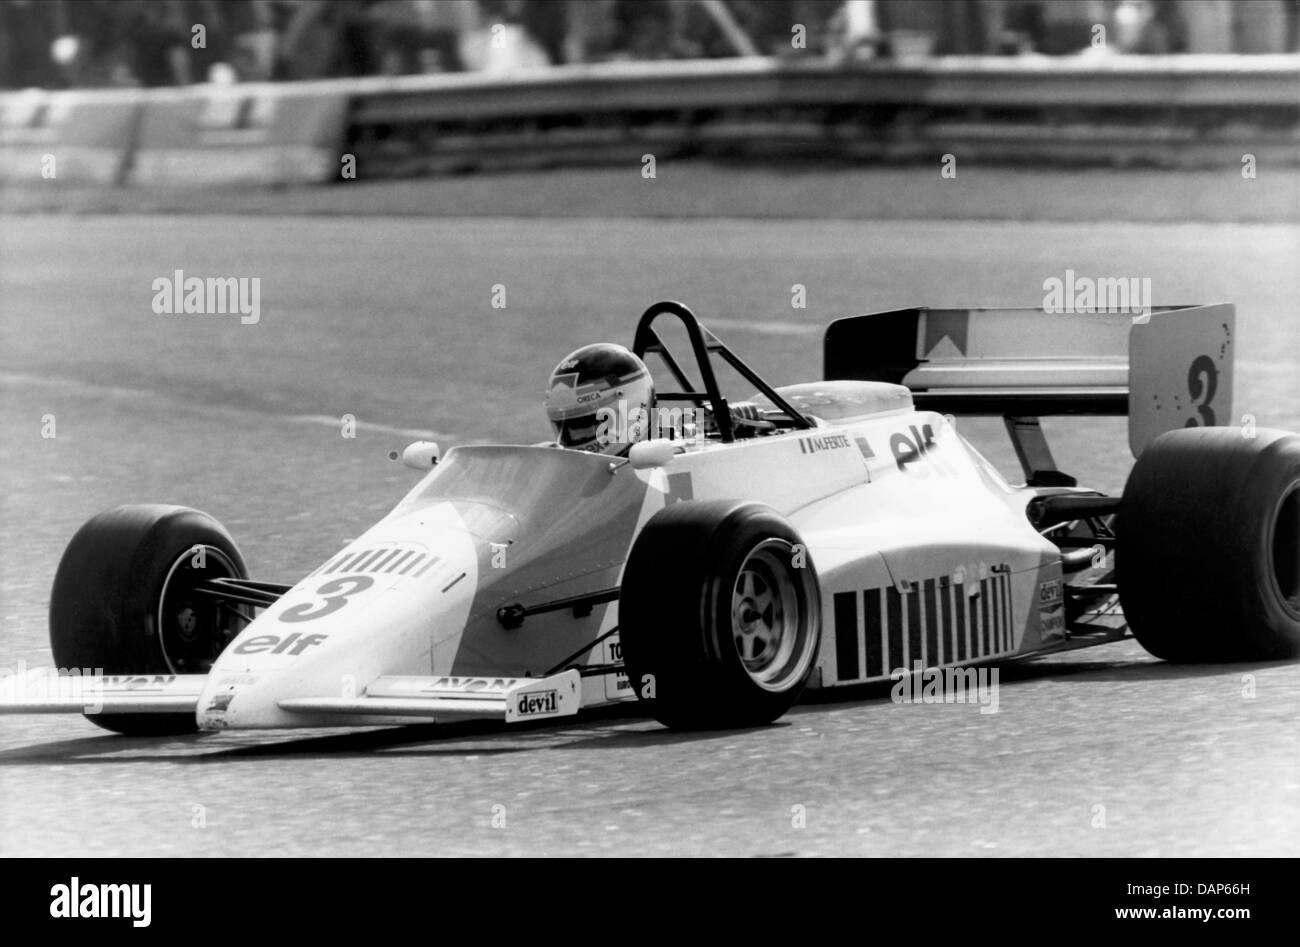 Michel Ferte; Formula 3000, March Oreca Stock Photo